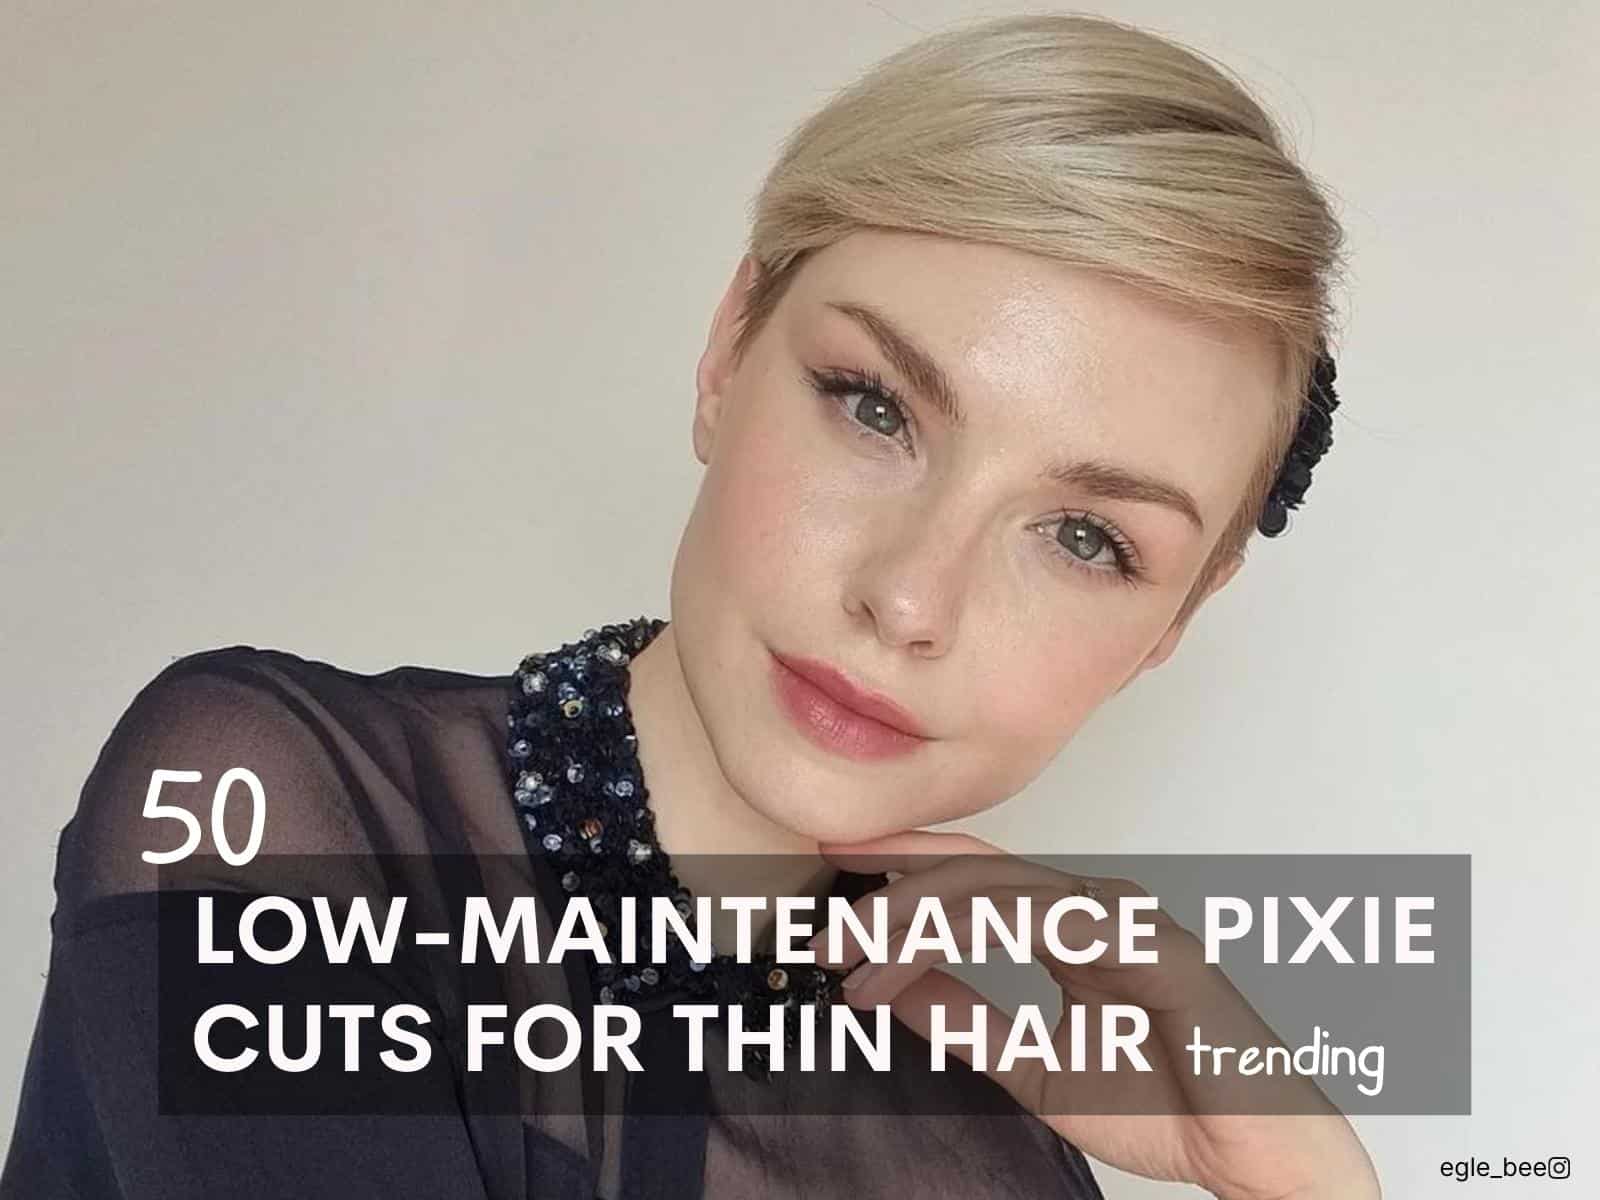 cortes pixie de baixa manutenção para cabelos finos